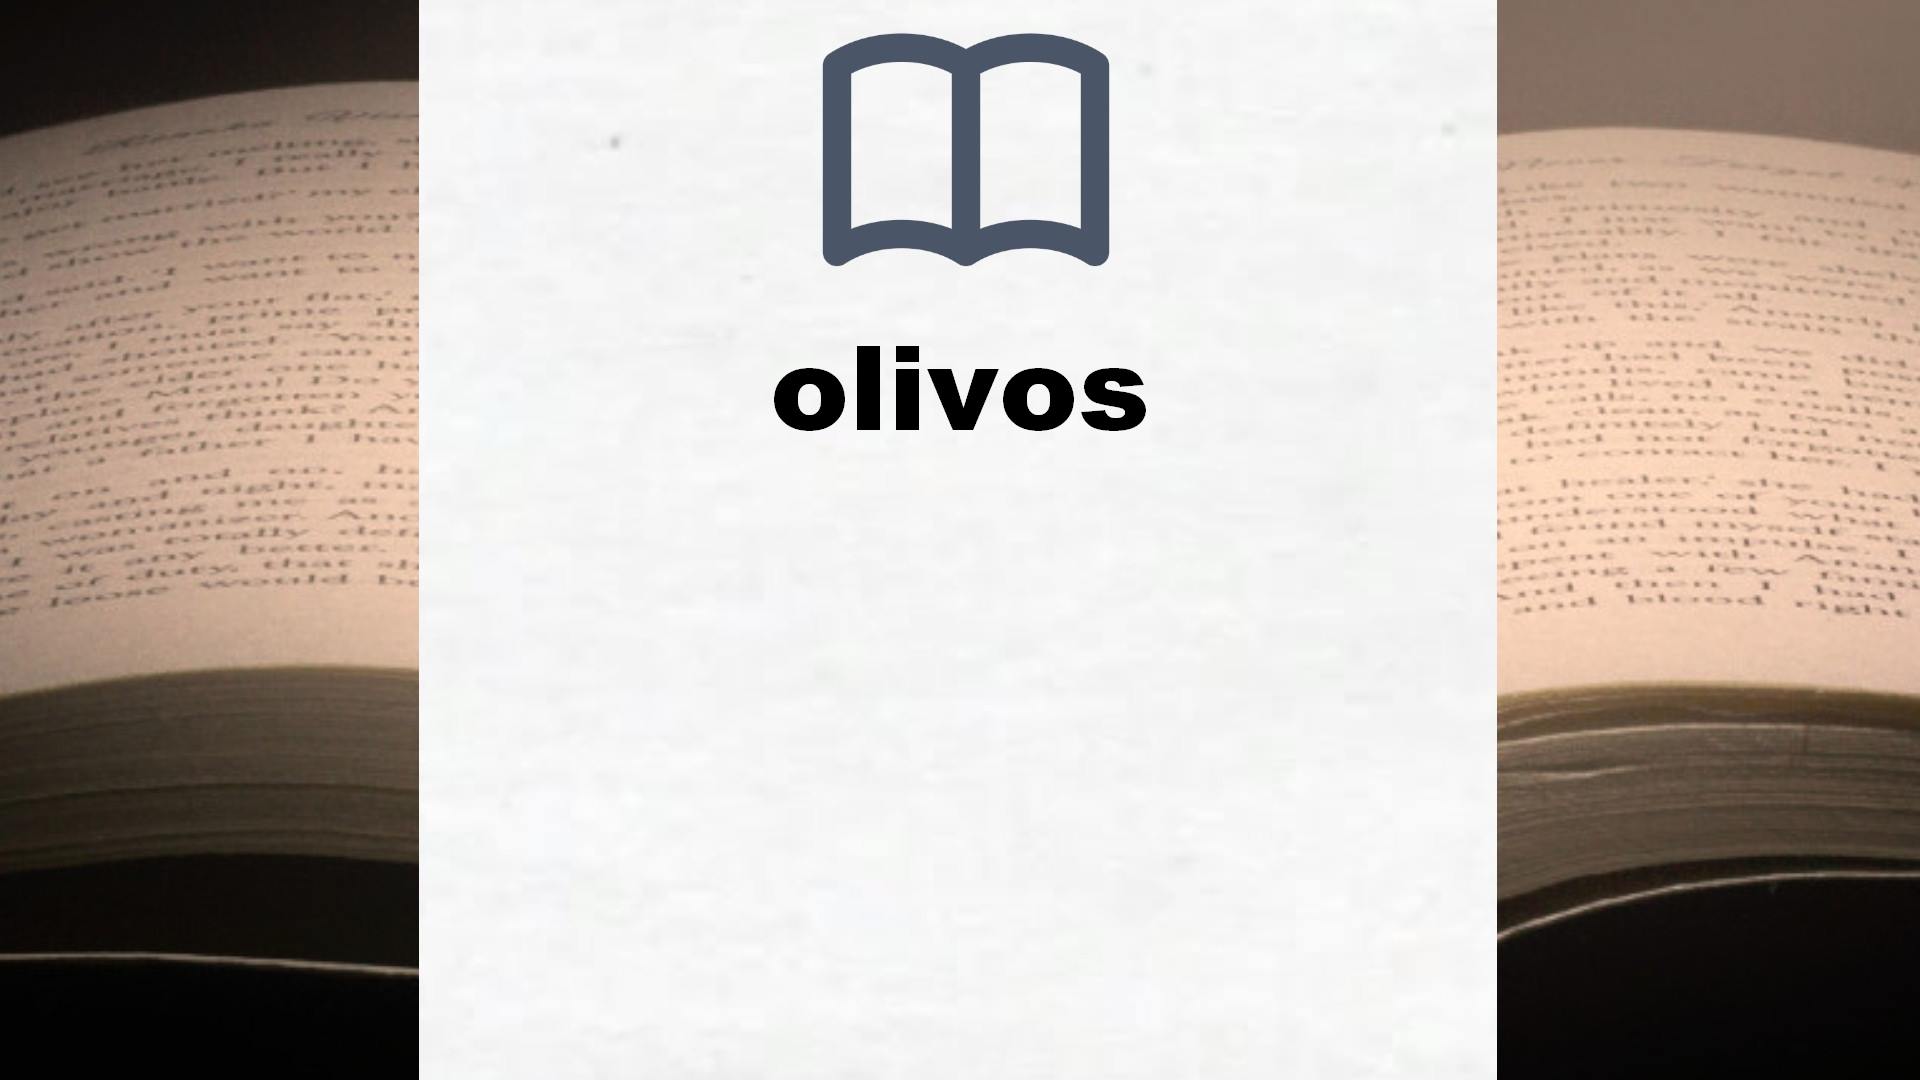 Libros sobre olivos